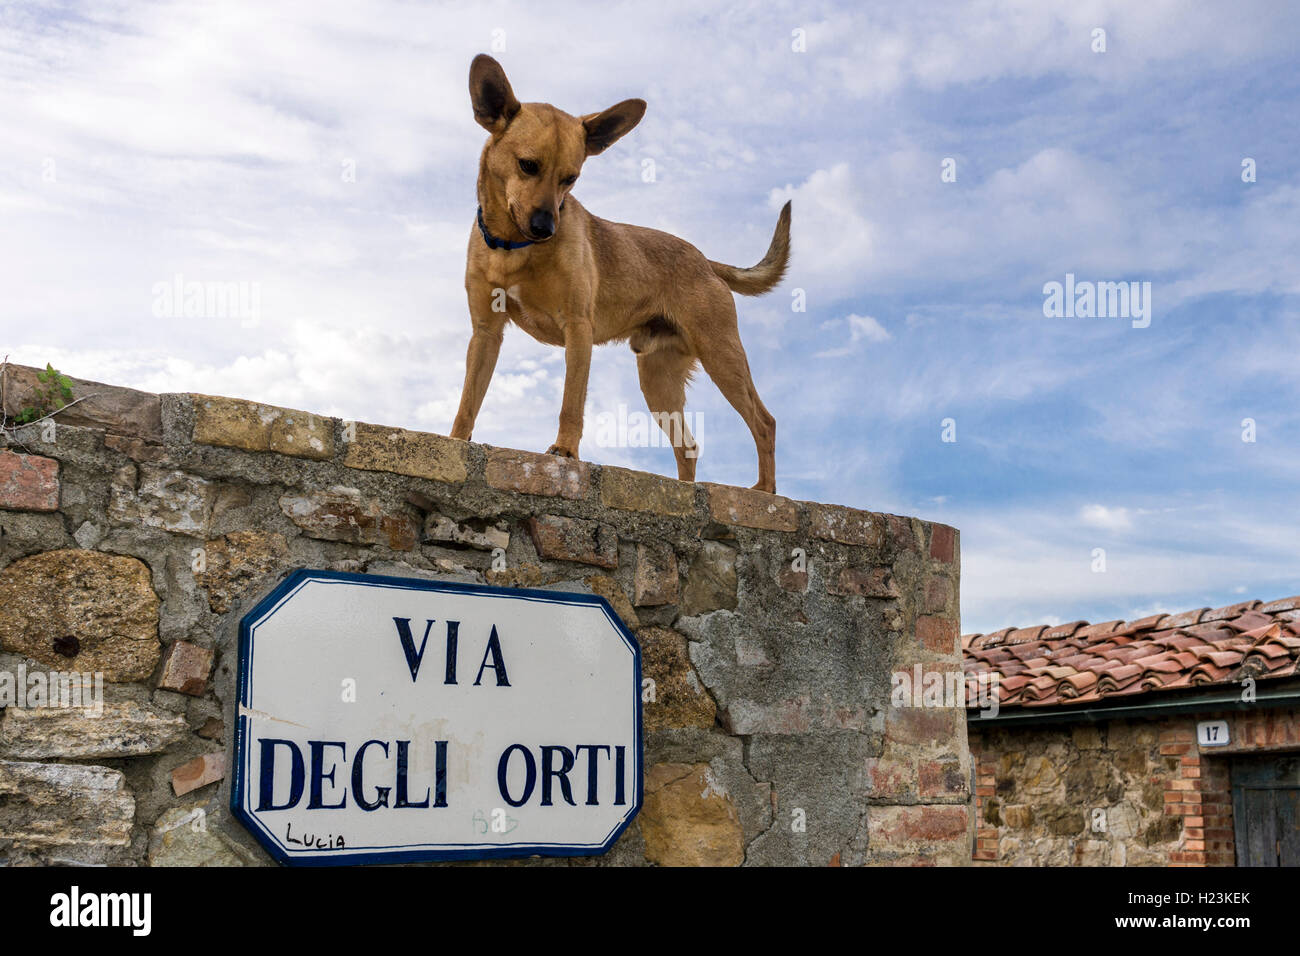 Schmale Gasse, Häuser aus Stein in der Stadt, der Hund steht auf Wand, San Quirico d'Orcia, Toskana, Italien Stockfoto